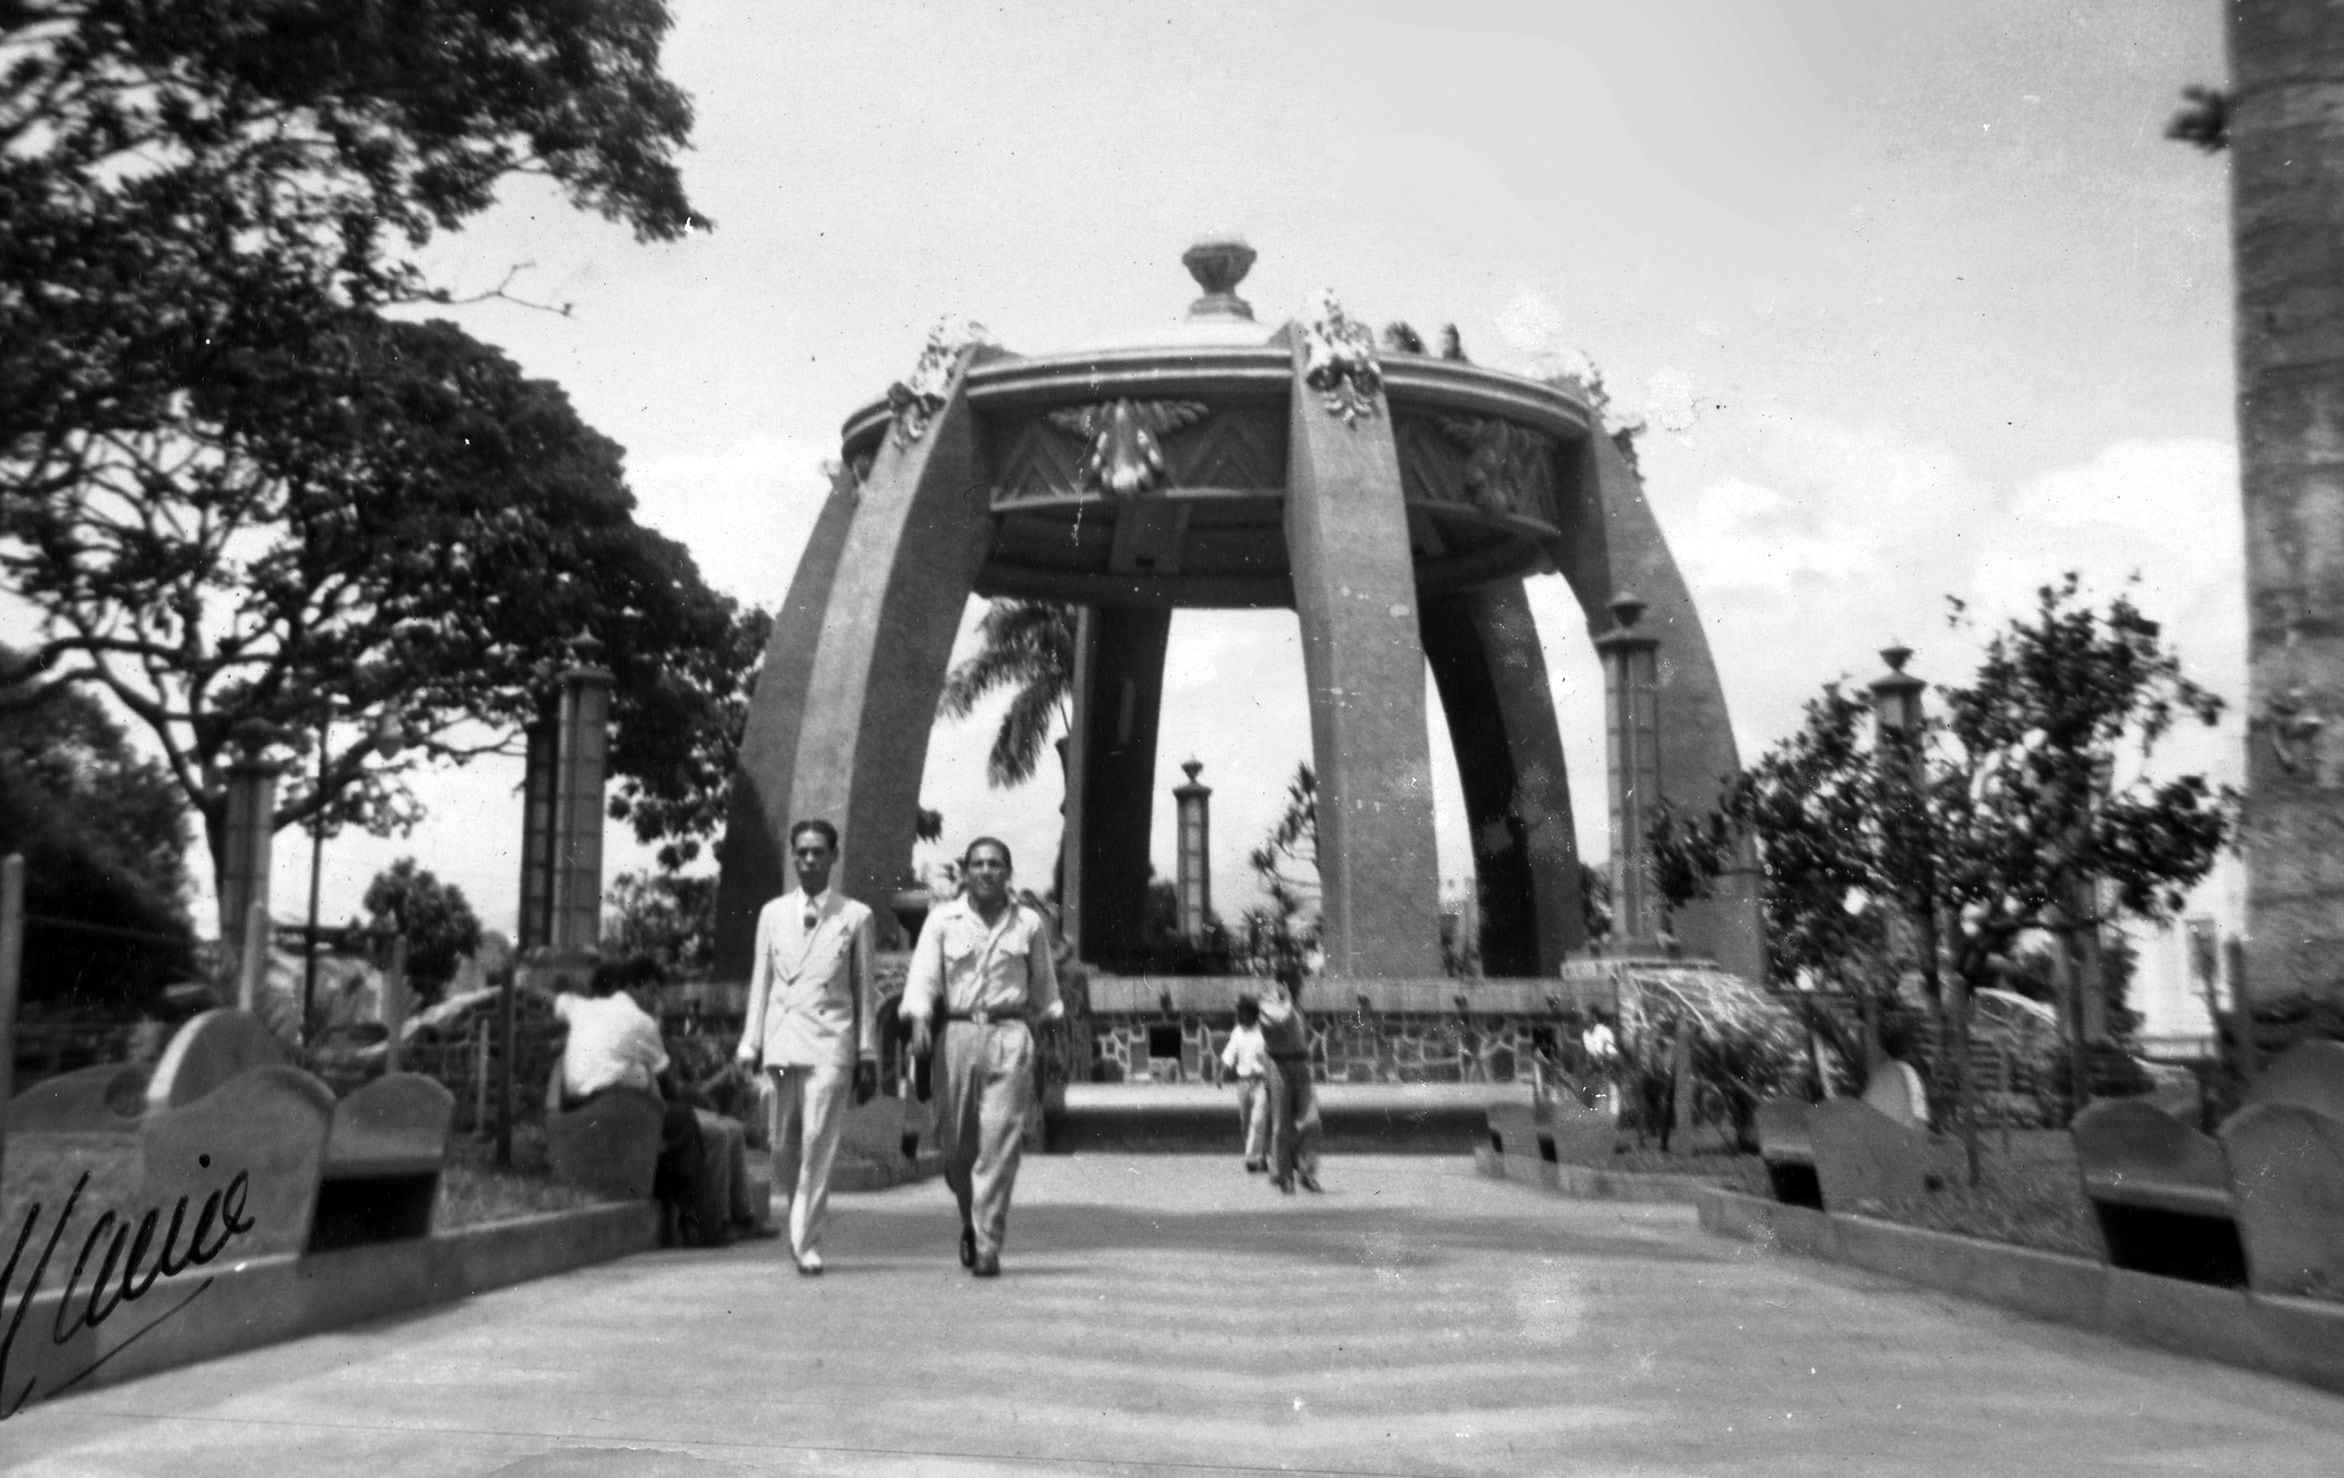 El Parque Central a principios de la década de 1950. Al fondo, el quiosco. Fotografía de autor no identificado.